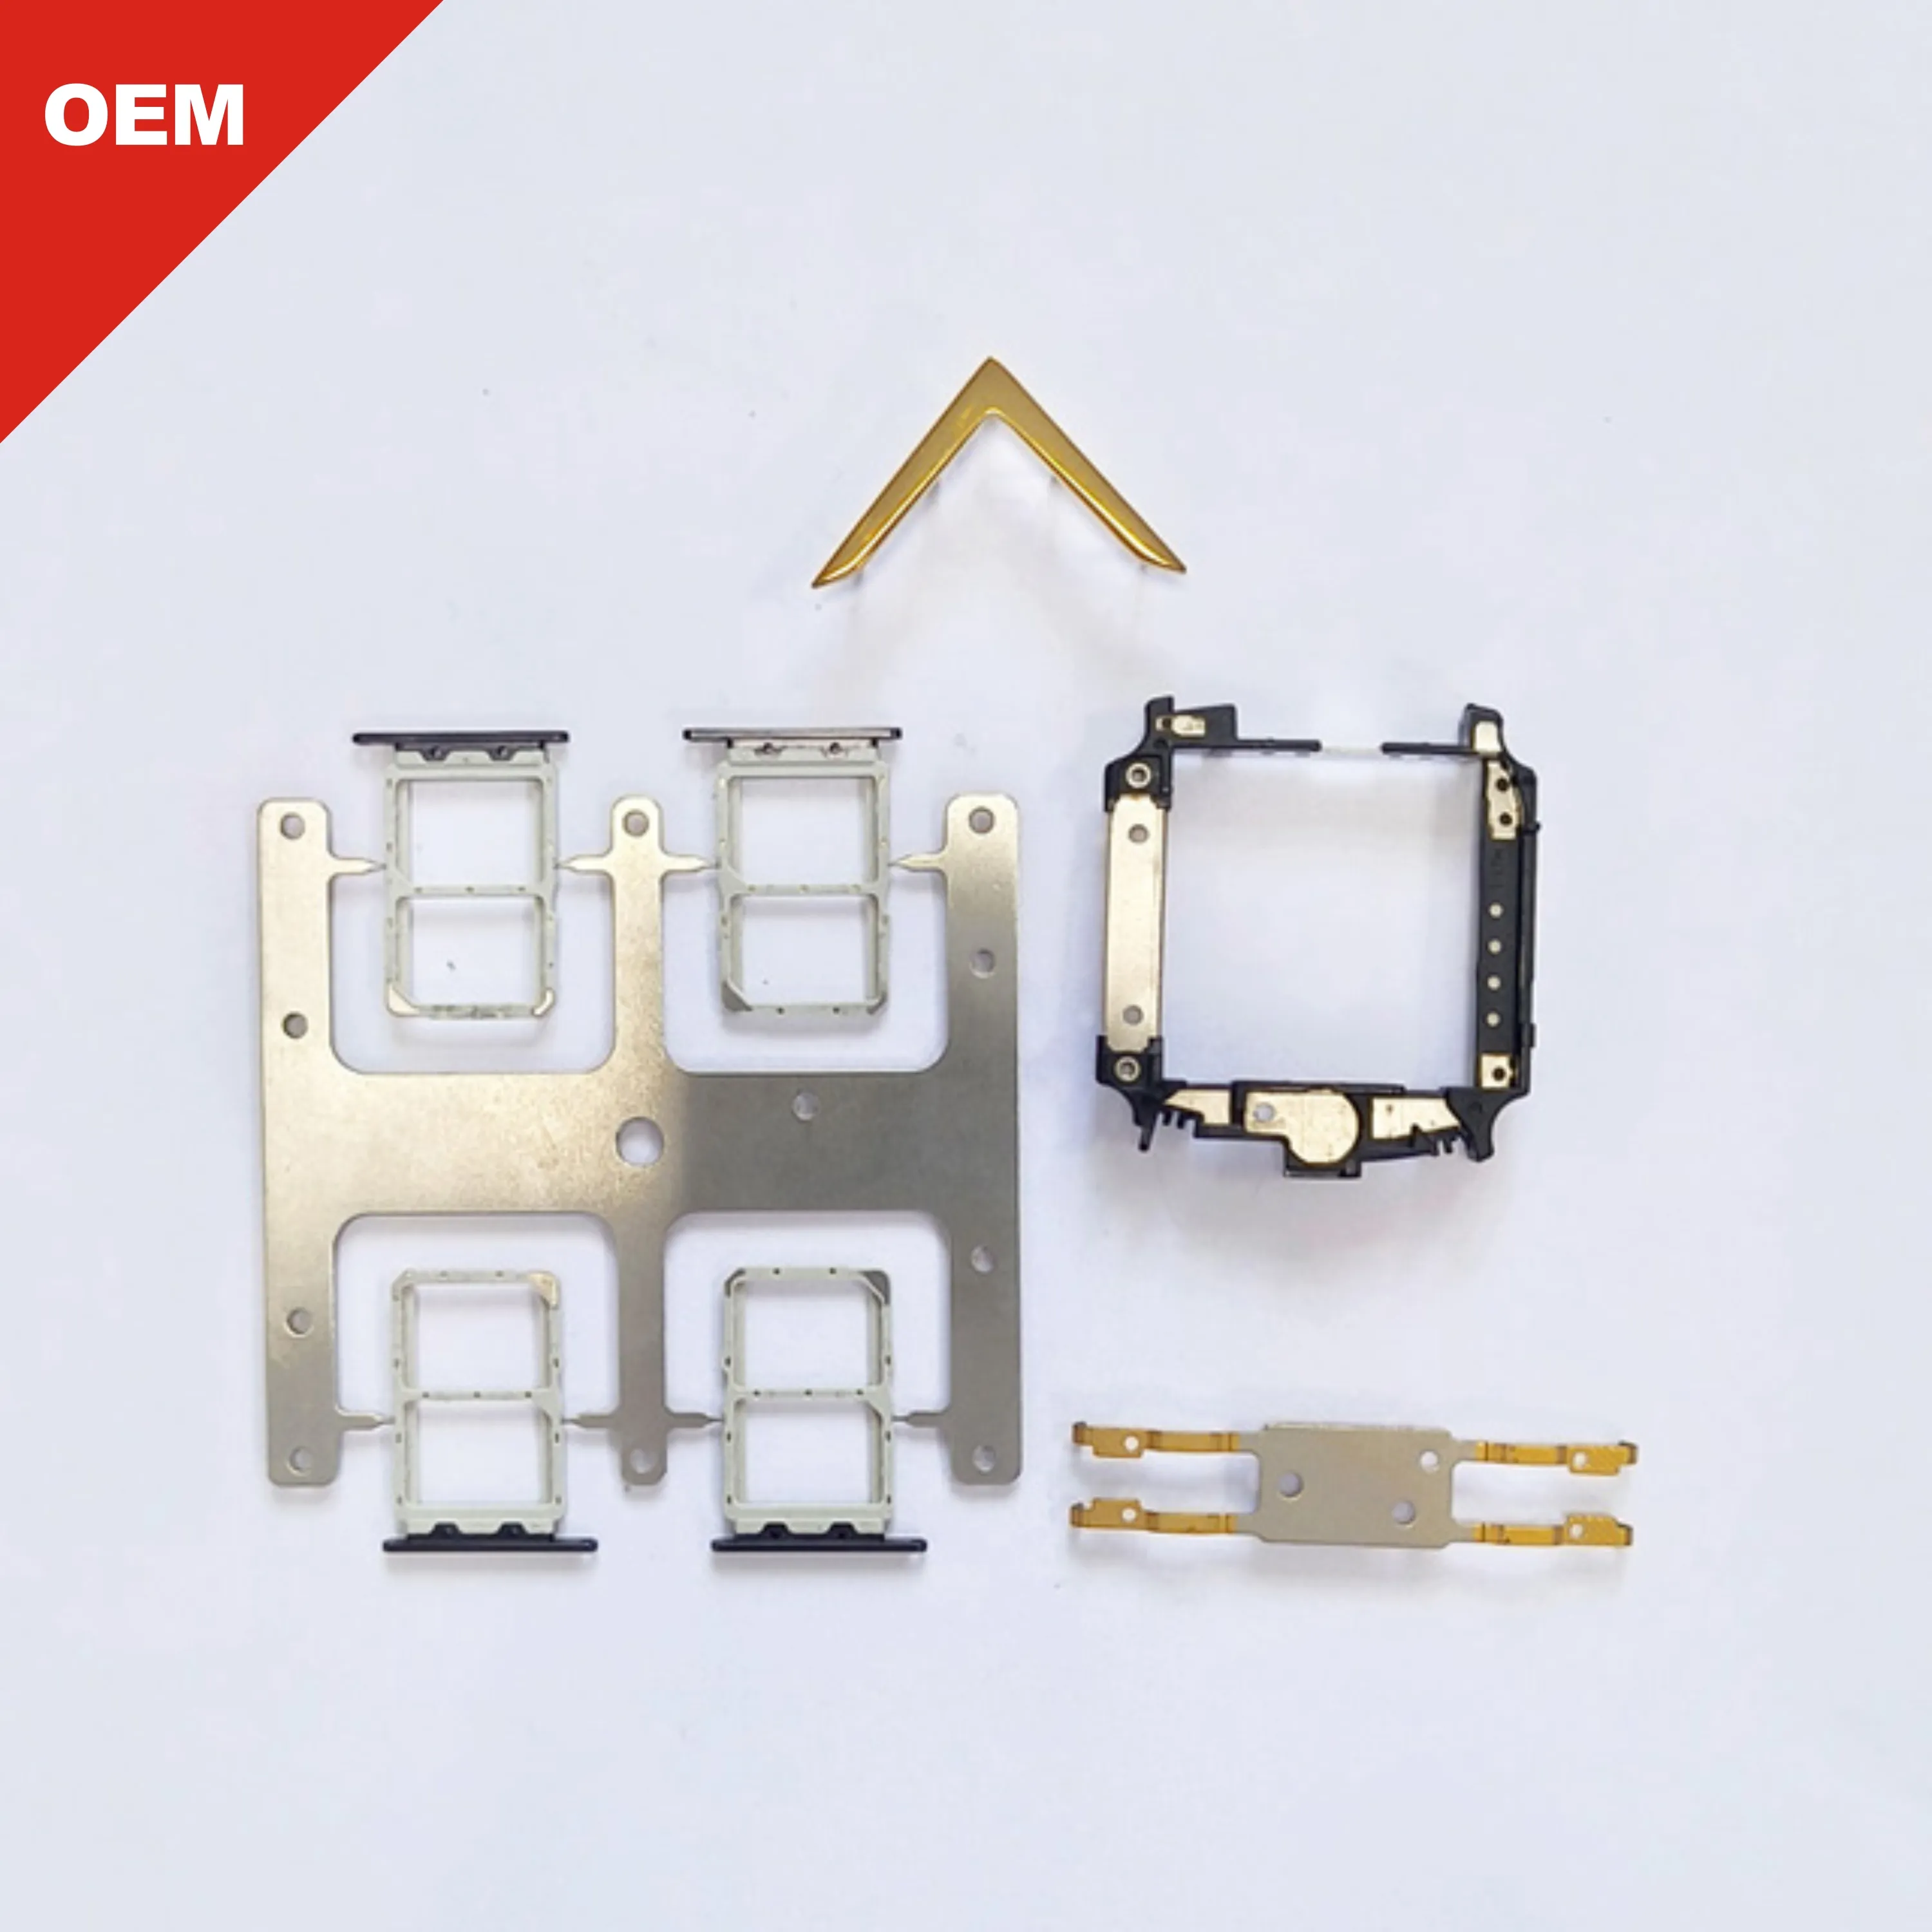 SIM kart tutucu yüksek kalite özel işleme hassas parçalar Metal parçalar sac yumruk şekillendirme fabrikada özelleştirmek